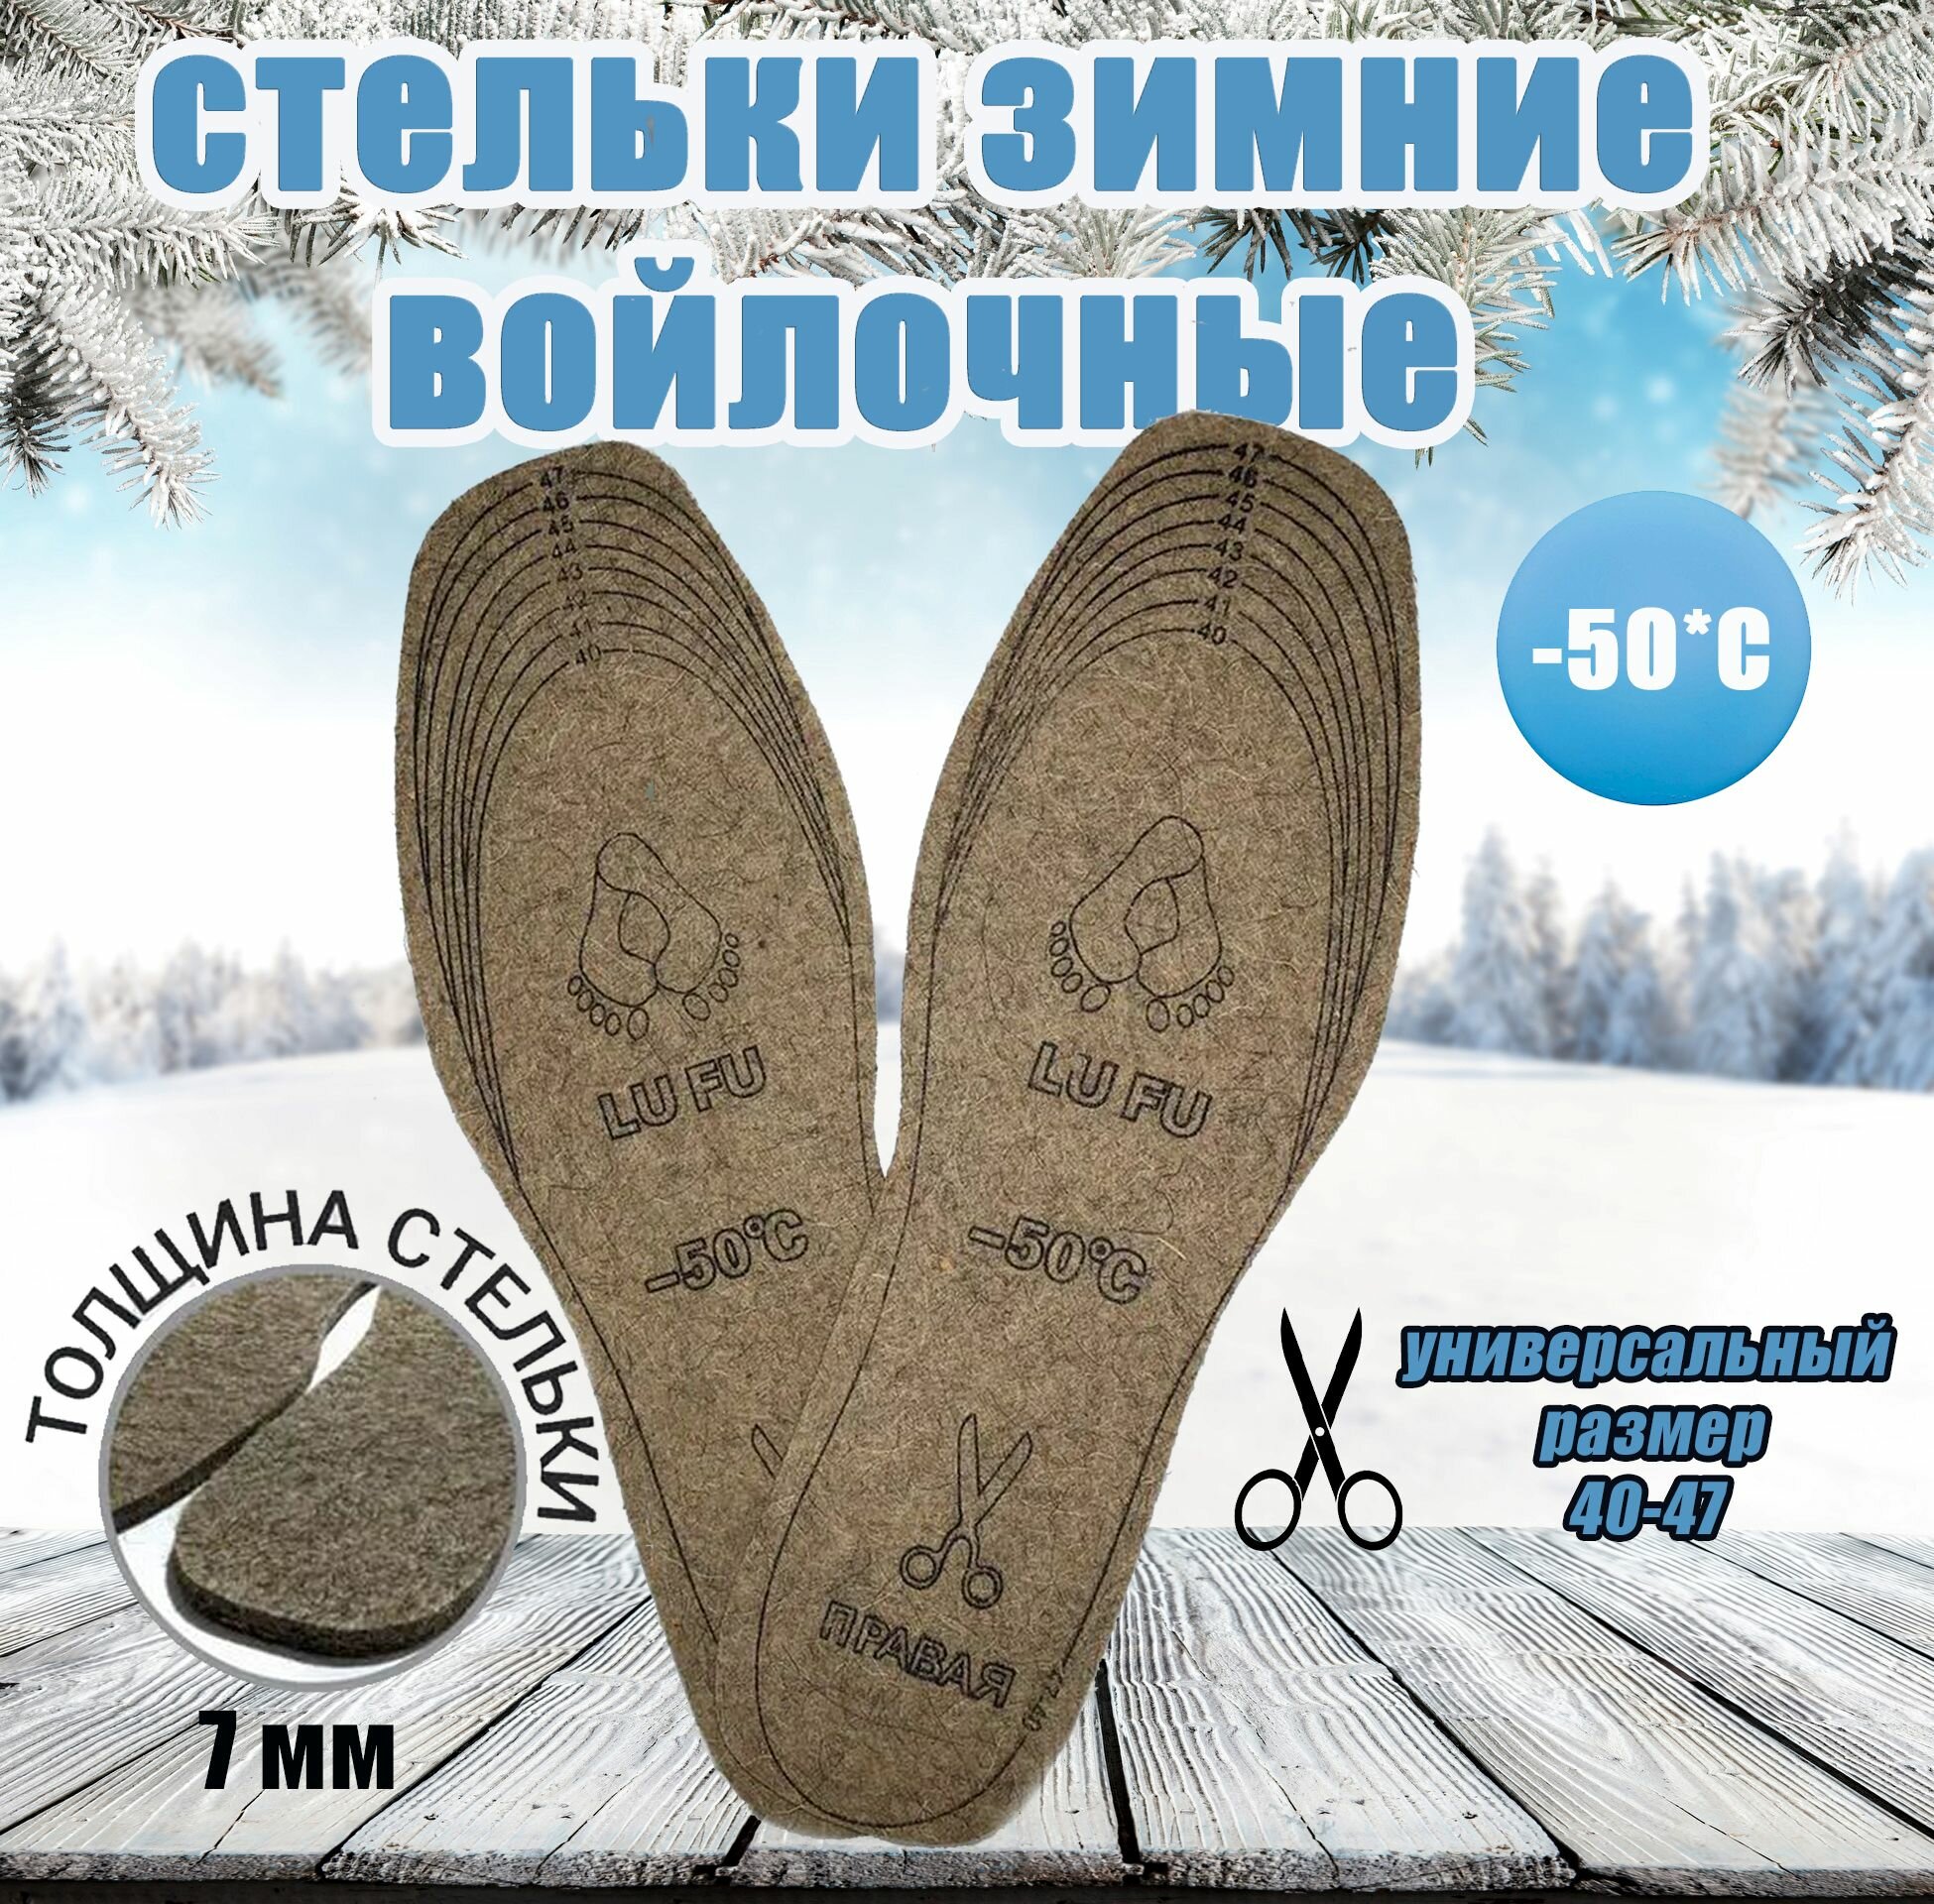 Стельки натуральные войлочные для обуви, теплые зимние. Универсальный размер 40-47